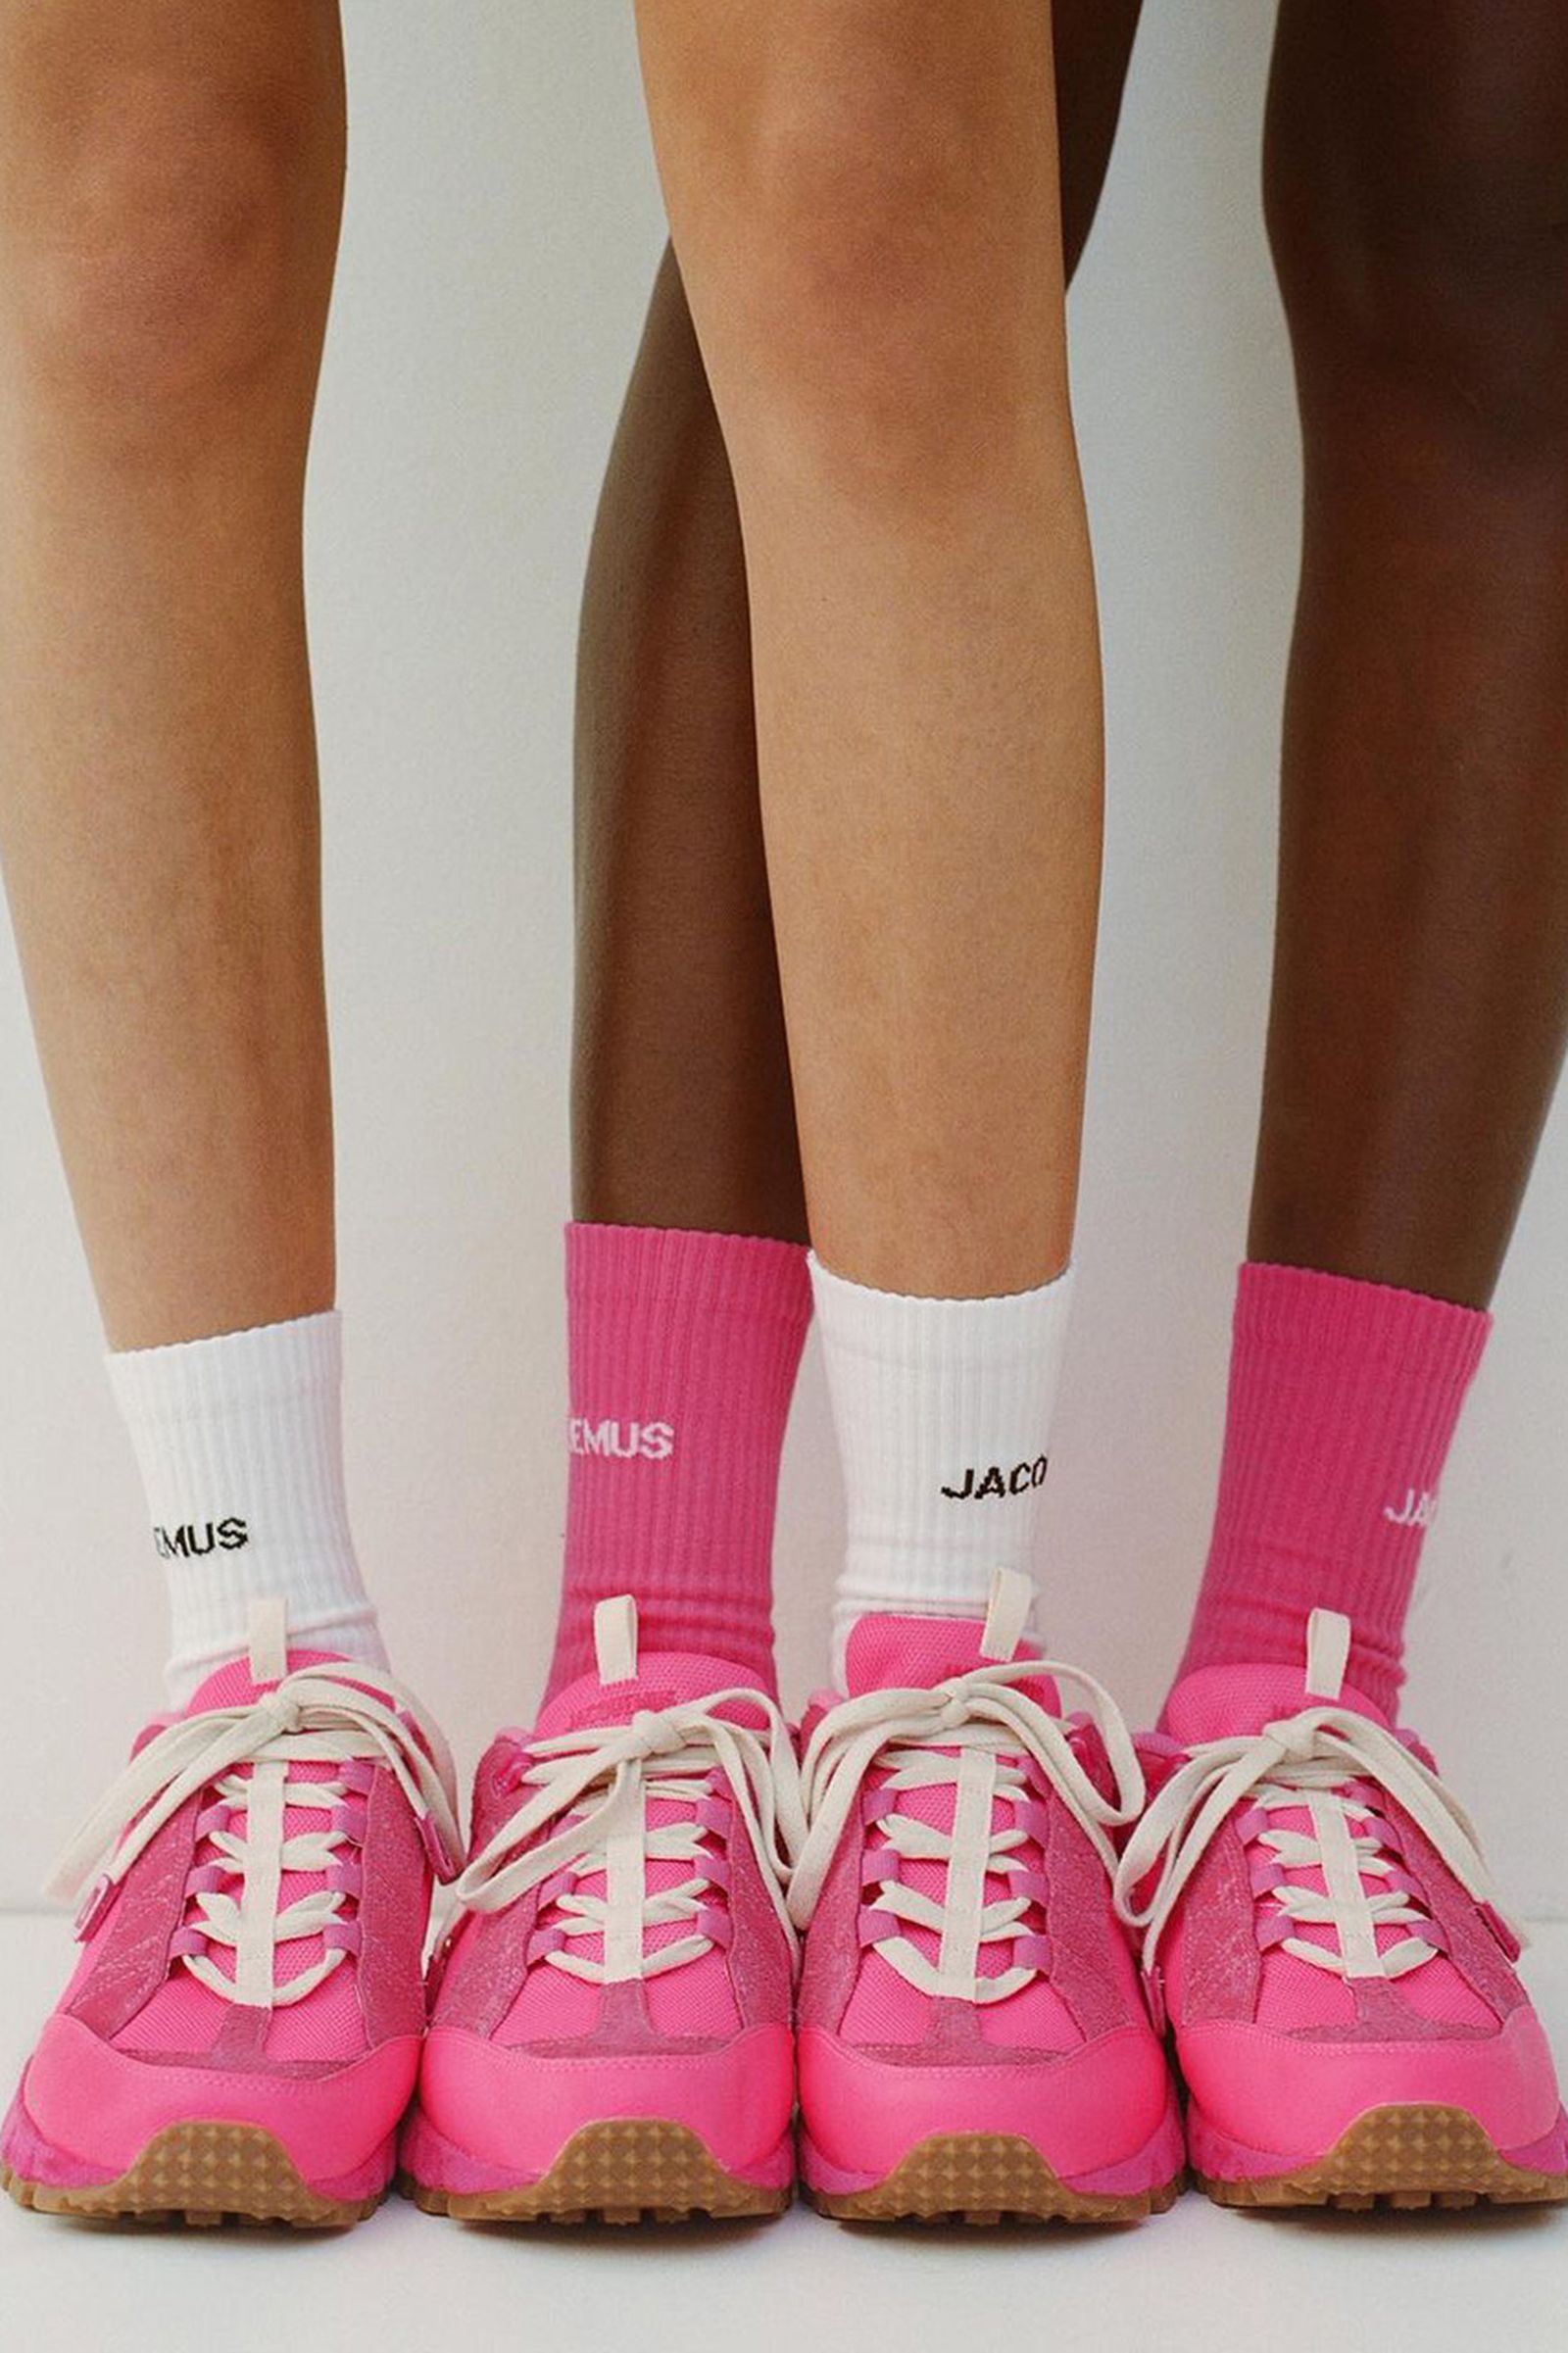 Jacquemus x Nike Air Humara Pink Sneakers: Release Date, Price